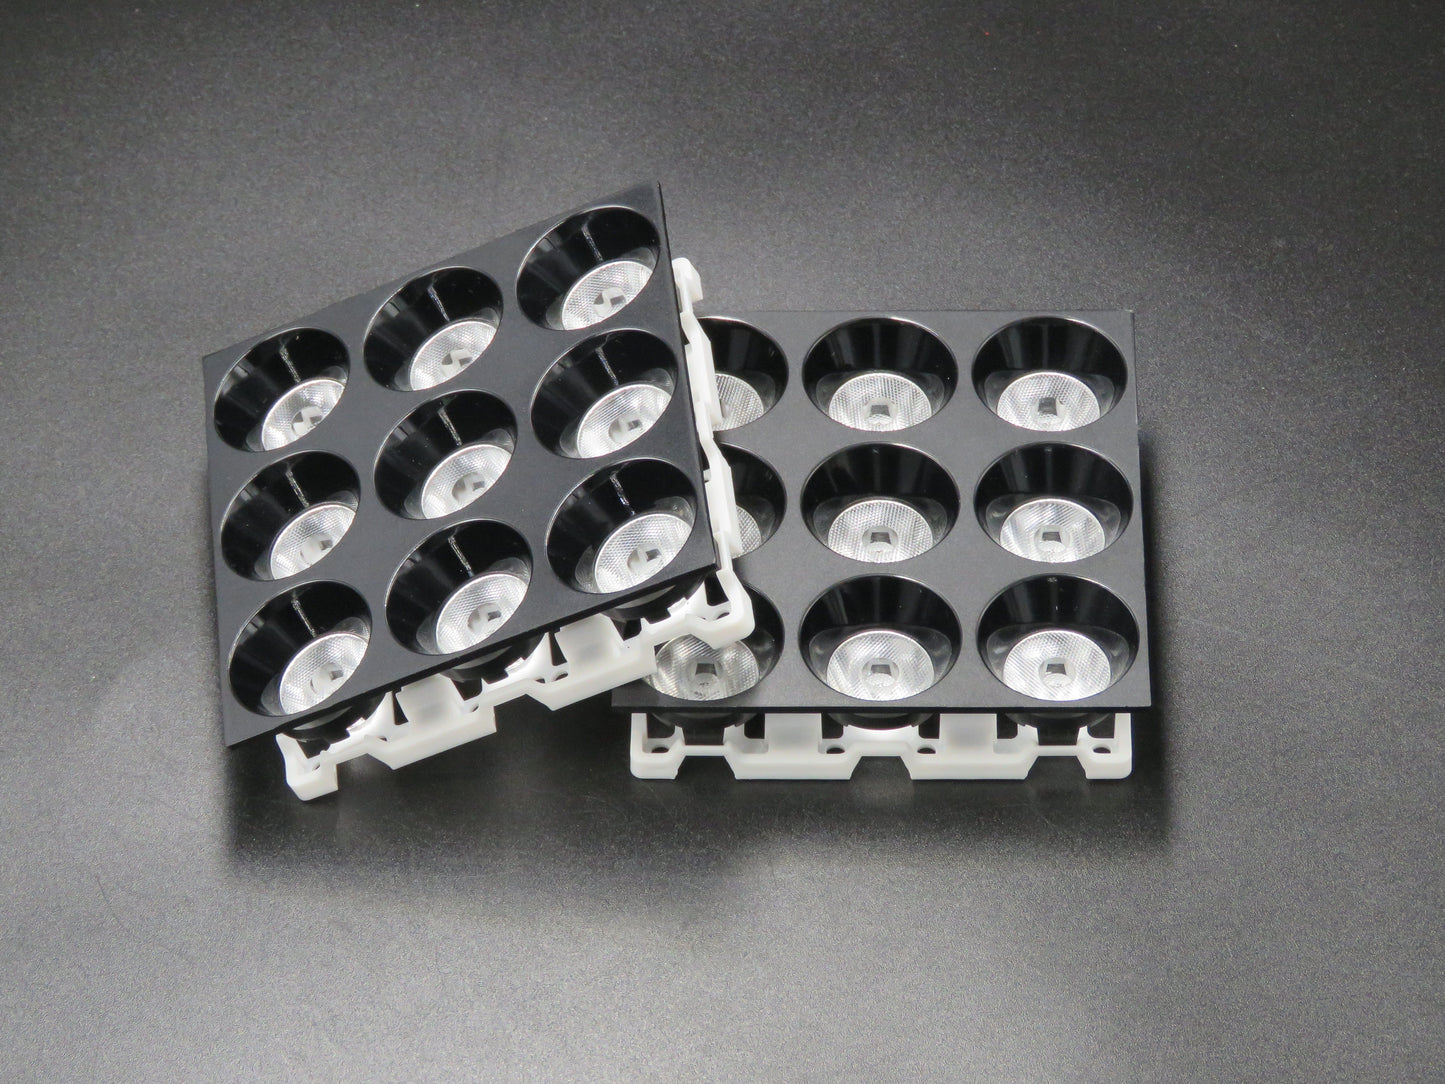 Osvětlovací čočka s magnetickým pásem 9 v 1 90 mm 24stupňová čočka Výroba čočky (5)